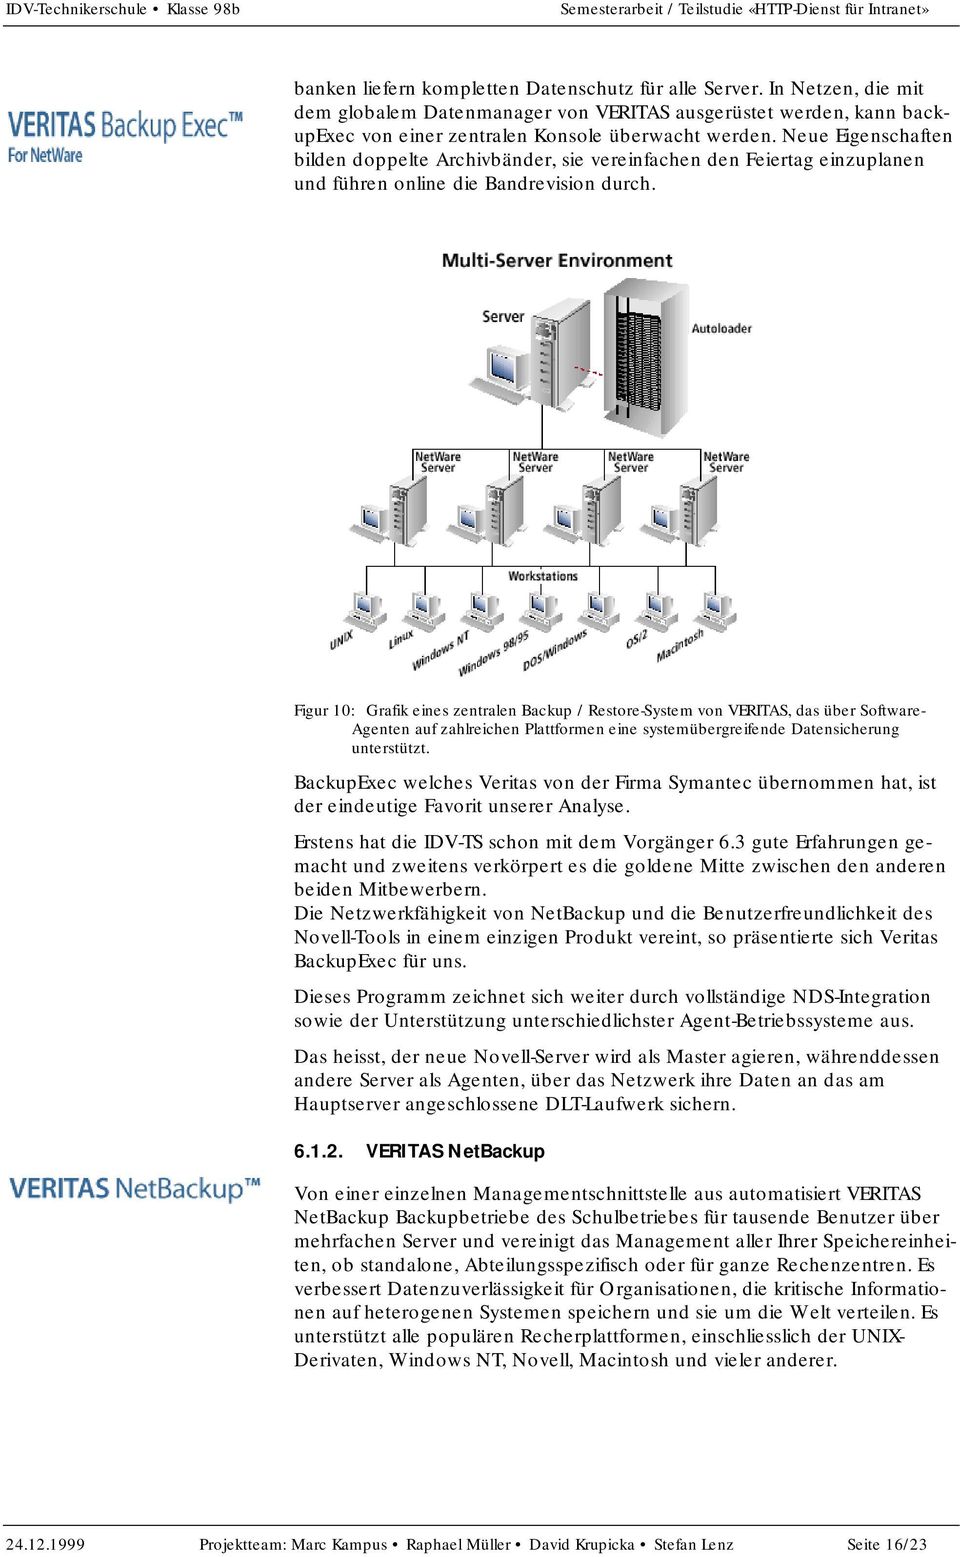 Figur 10: Grafik eines zentralen Backup / Restore-System von VERITAS, das über Software- Agenten auf zahlreichen Plattformen eine systemübergreifende Datensicherung unterstützt.